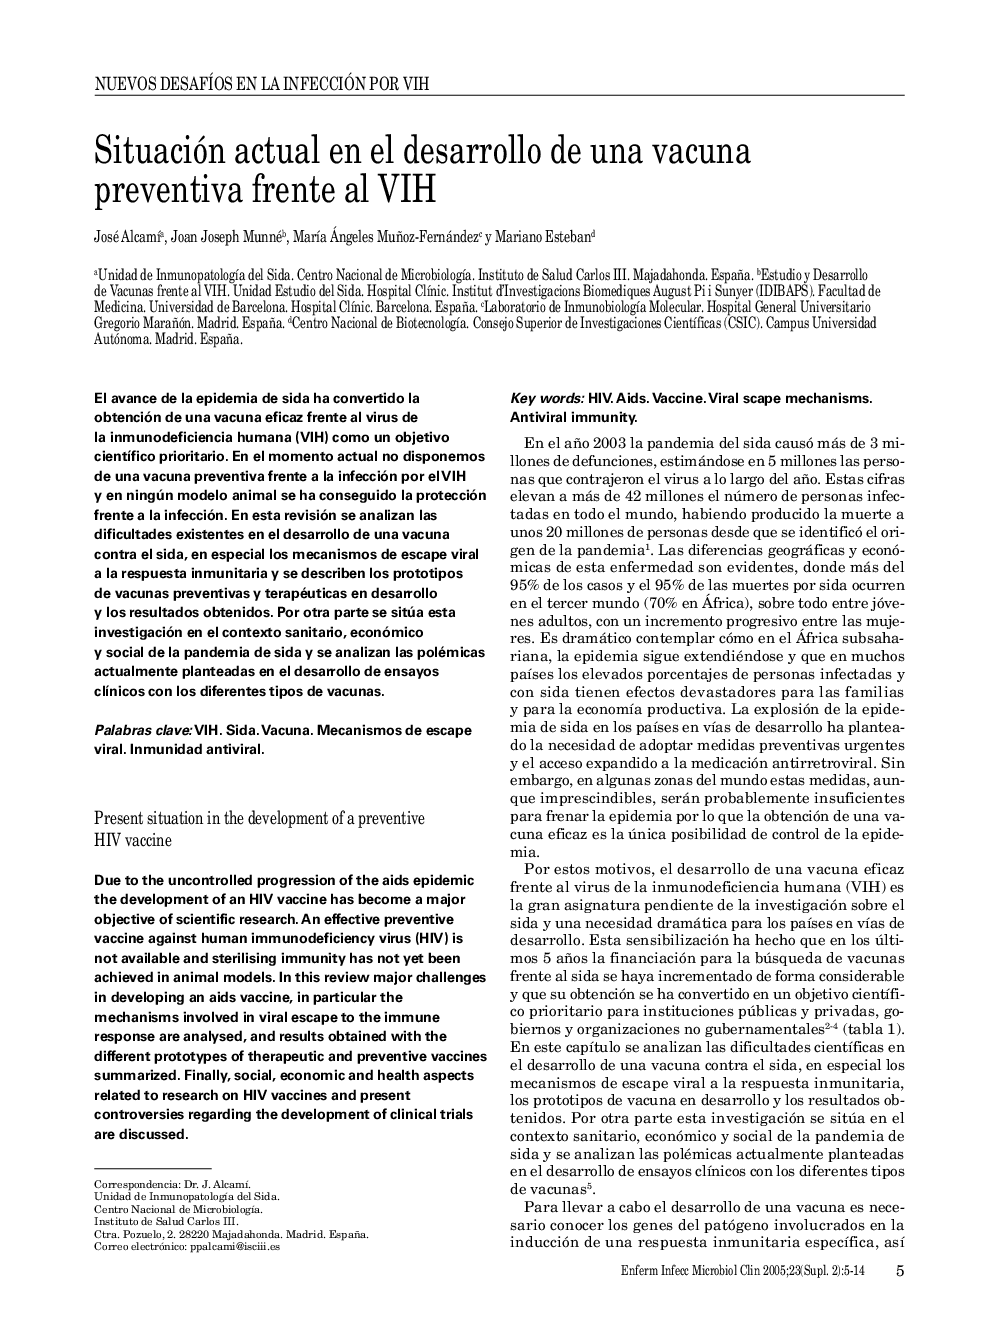 Situación actual en el desarrollo de una vacuna preventiva frente al VIH